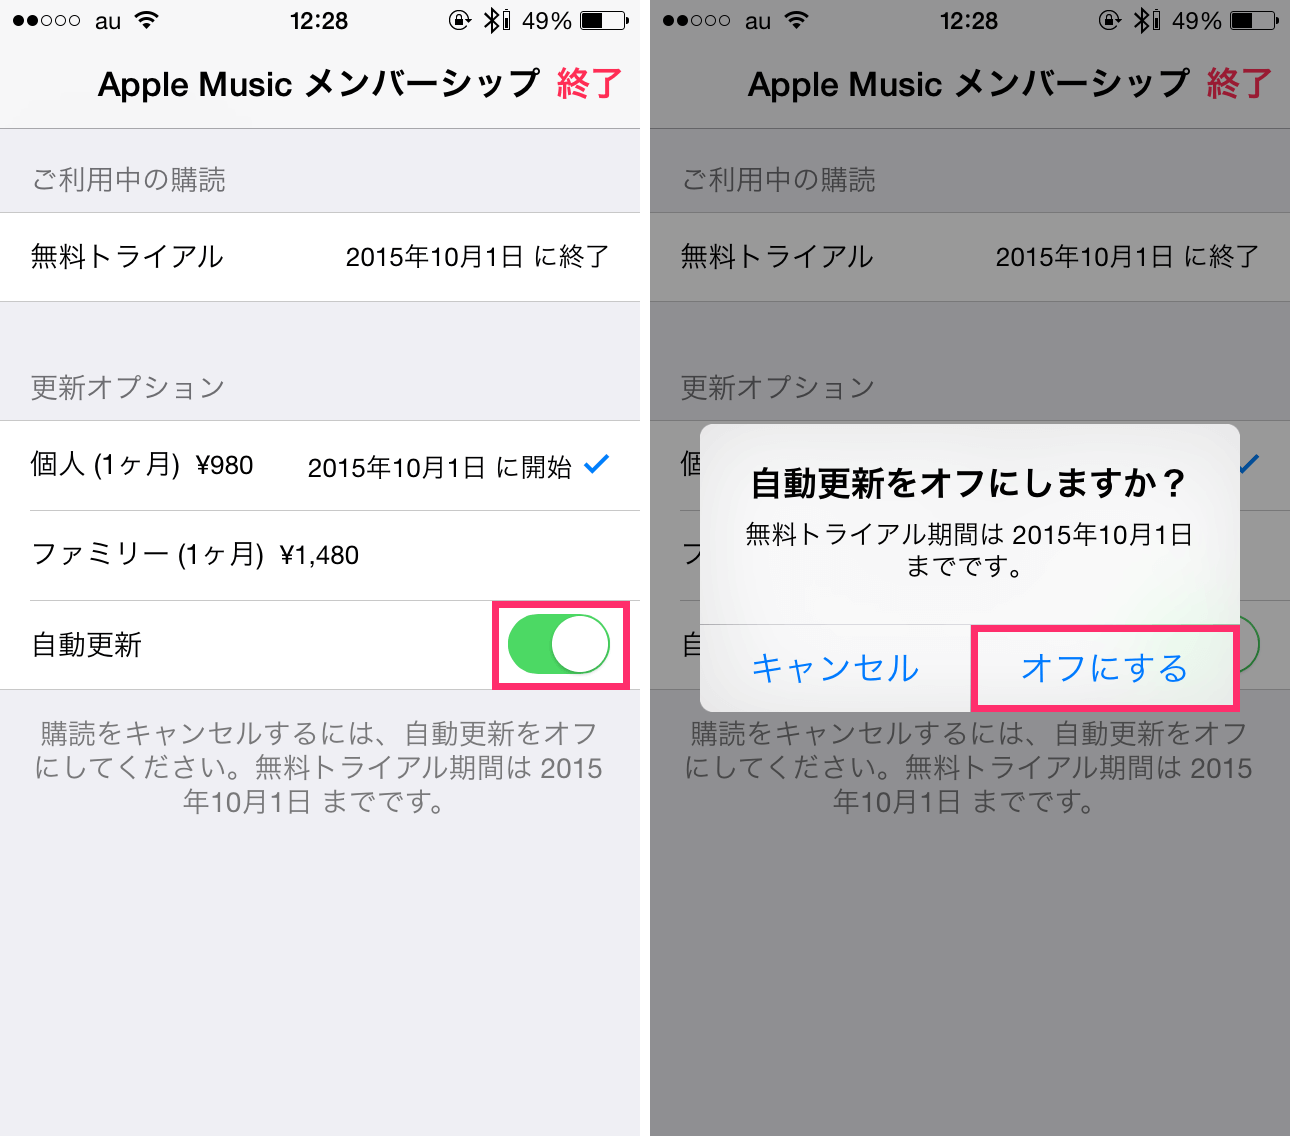 ミュージック 期間 アップル 無料 Apple Musicは解約後どうなる？iPhone内にダウンロードした曲はそのまま残る？無料期間中にダウンロードした音楽は退会後も聴けるのか